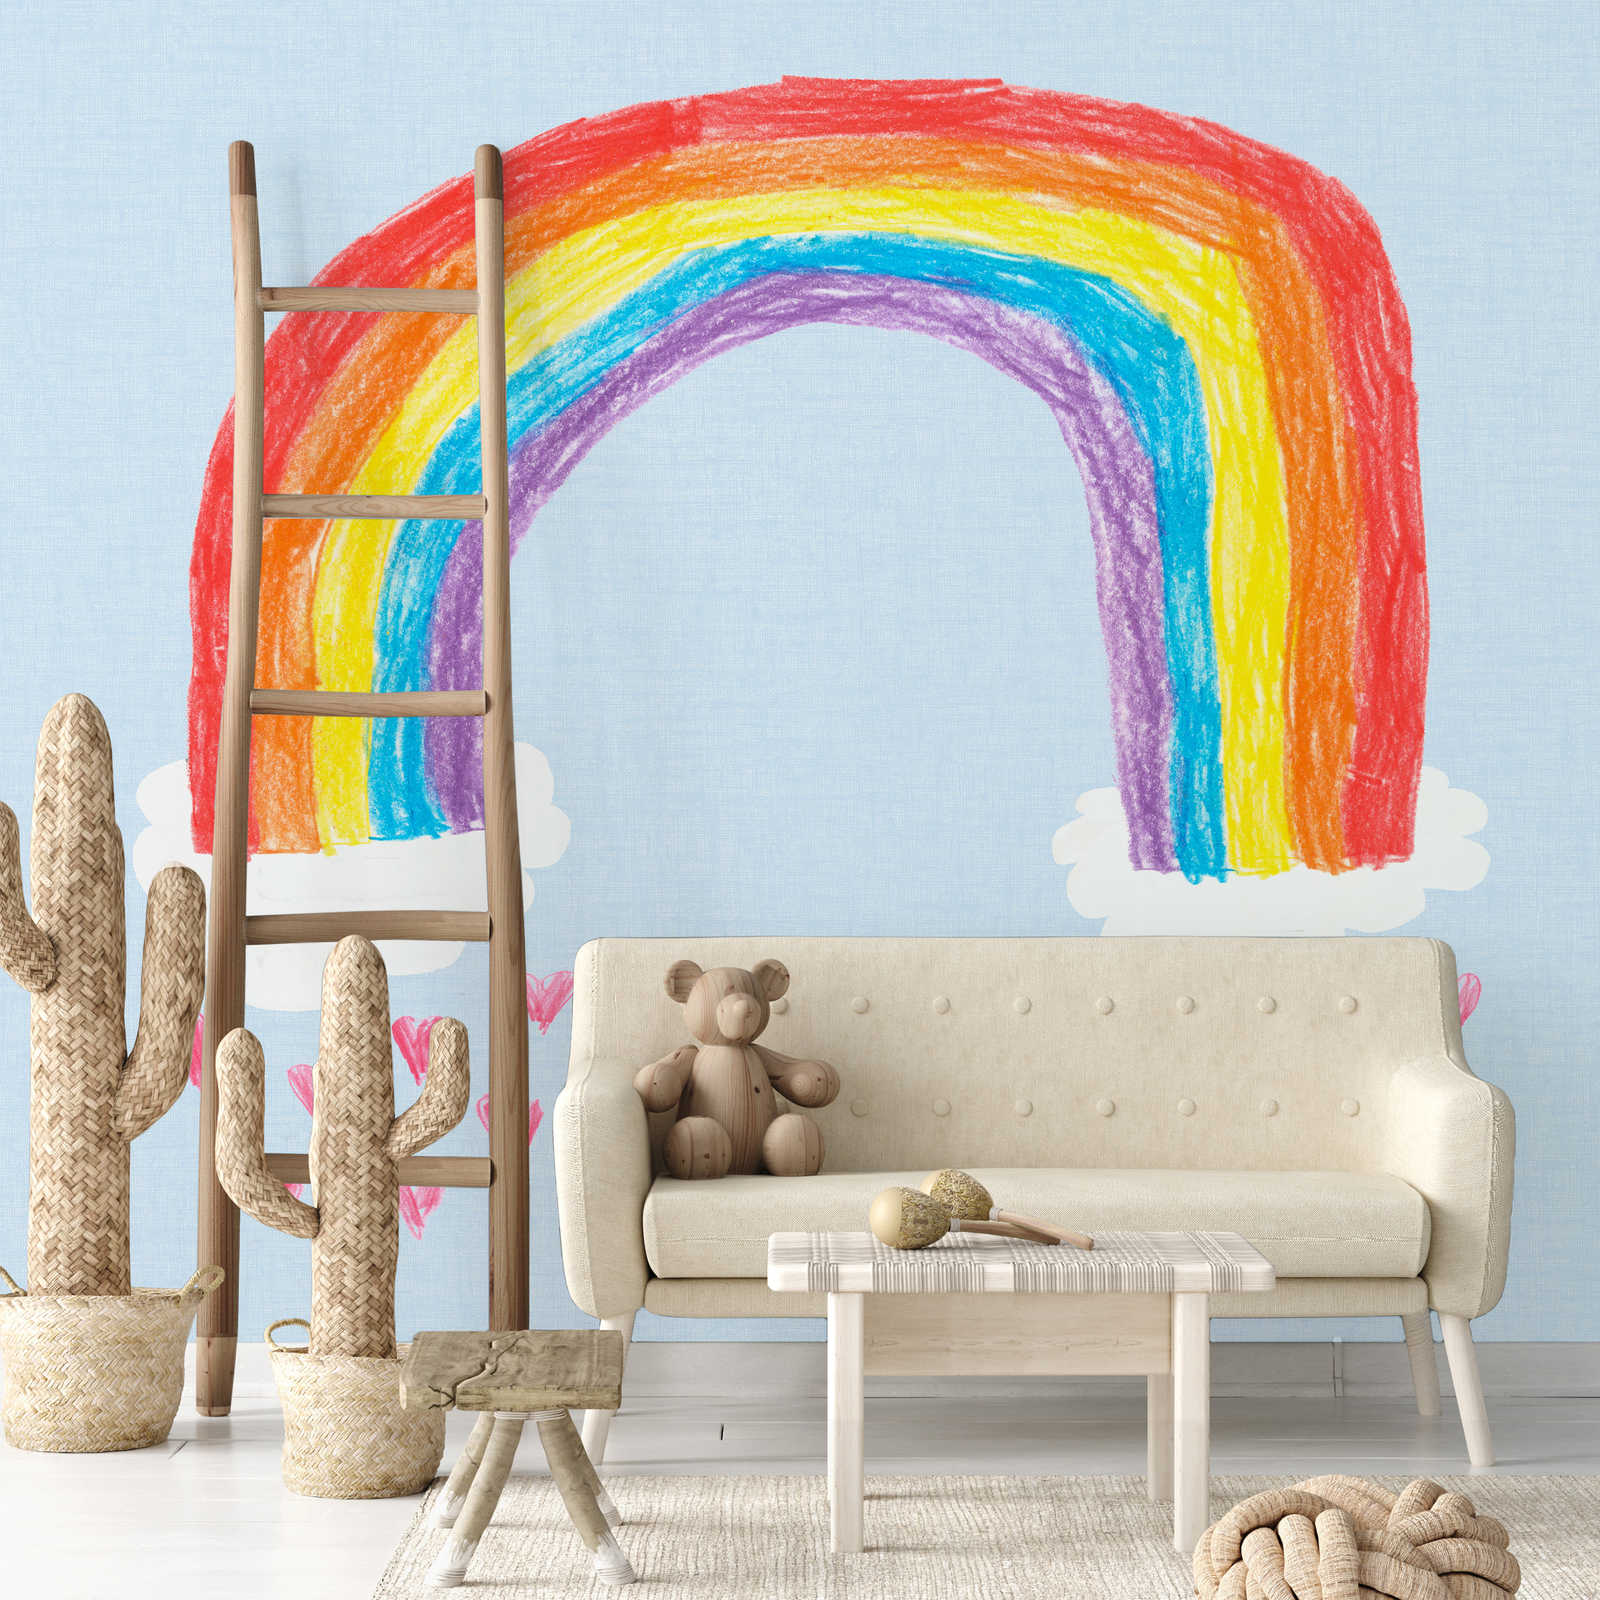             Carta da parati arcobaleno autodipinta per la stanza dei bambini
        